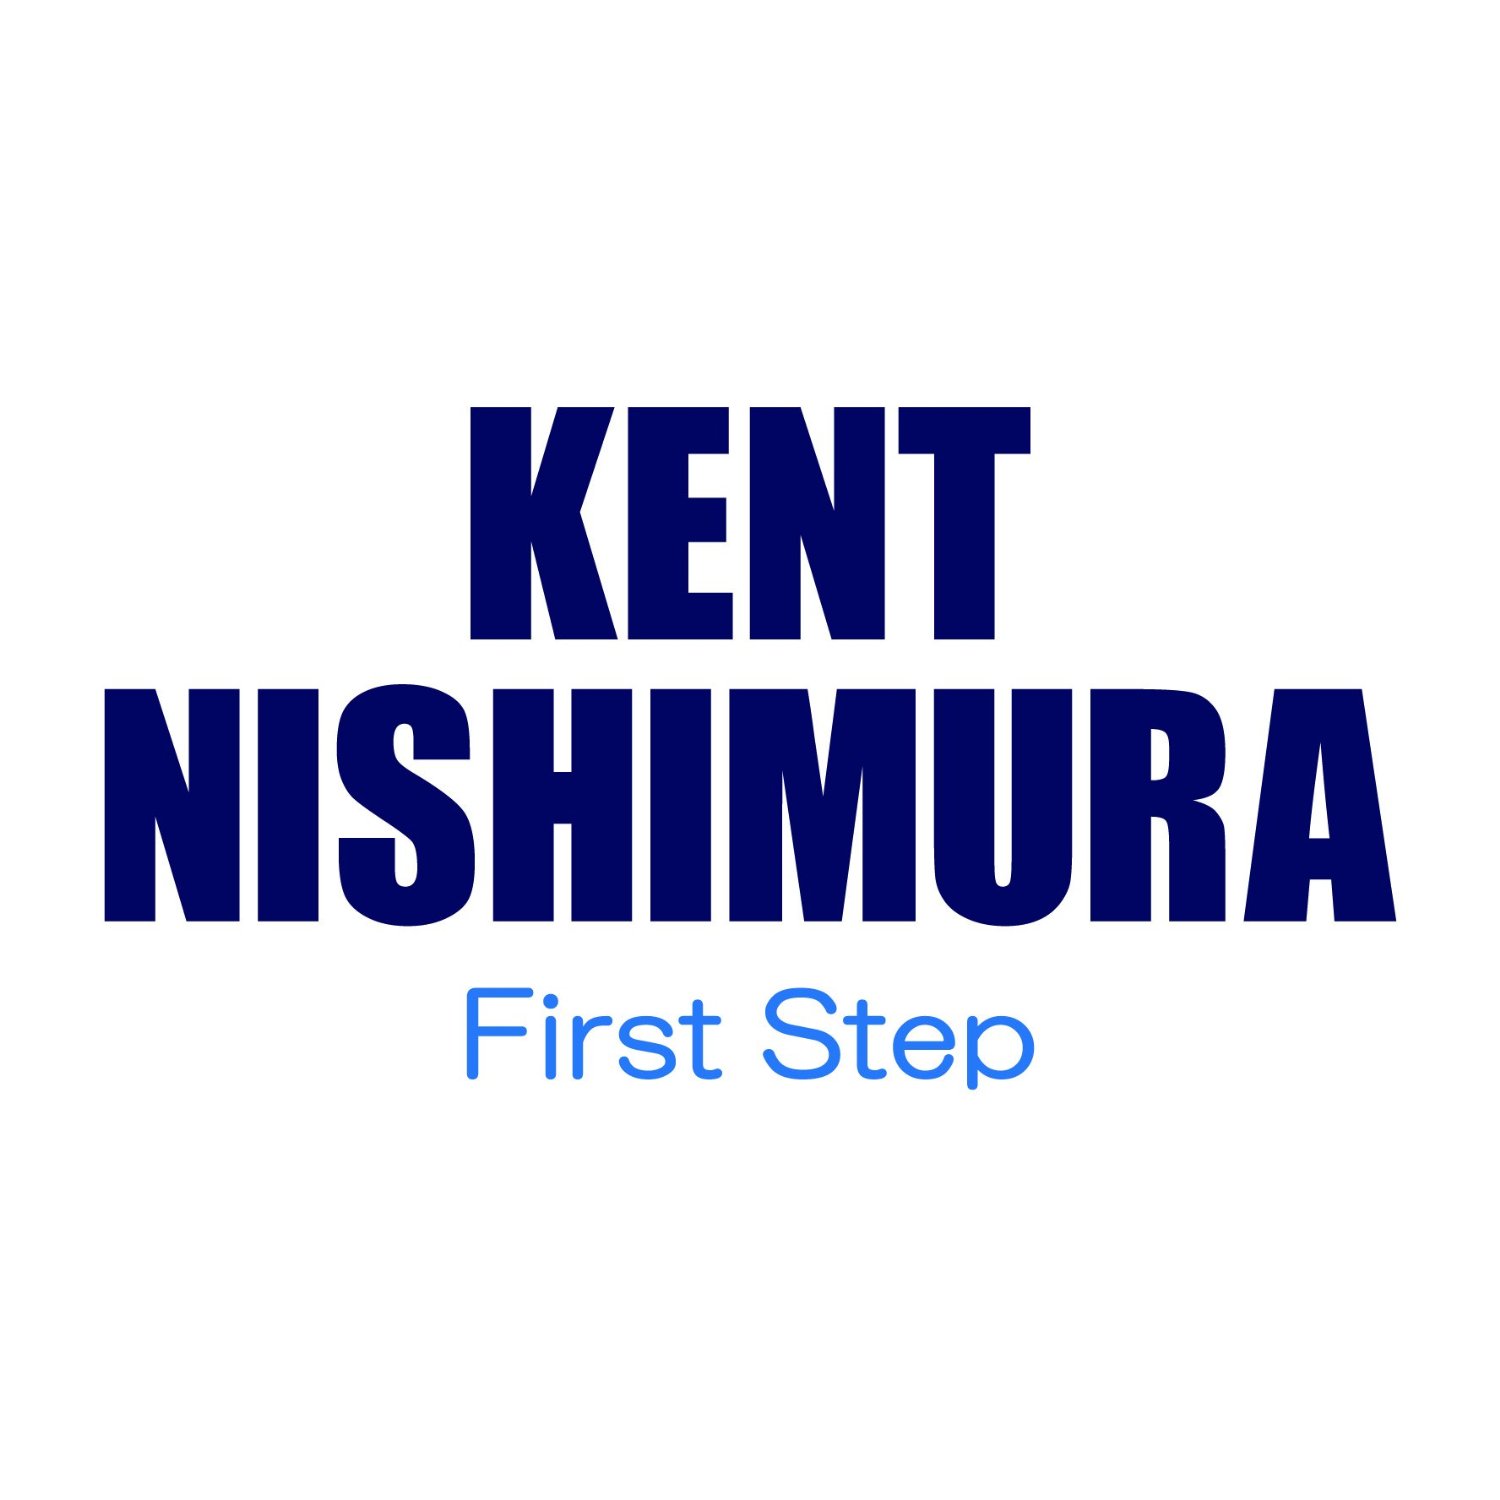 CD 西村ケント / ファースト・ステップ: First Step ('15)【ネコポス発送】 シーディー